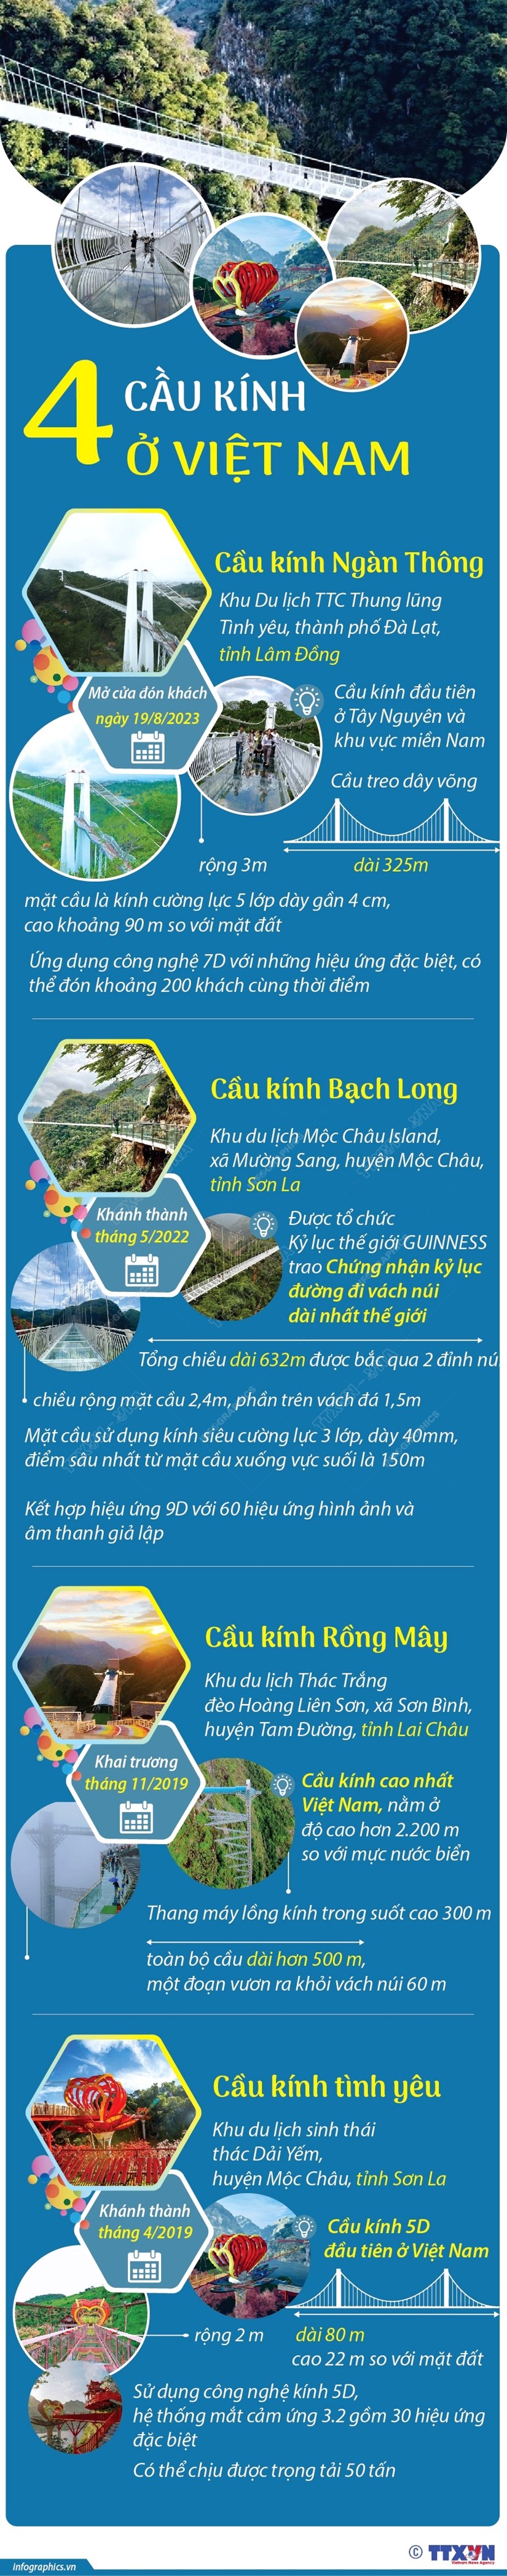 [Infographics] Tim hieu thong tin ve bon cay cau kinh o Viet Nam hinh anh 1